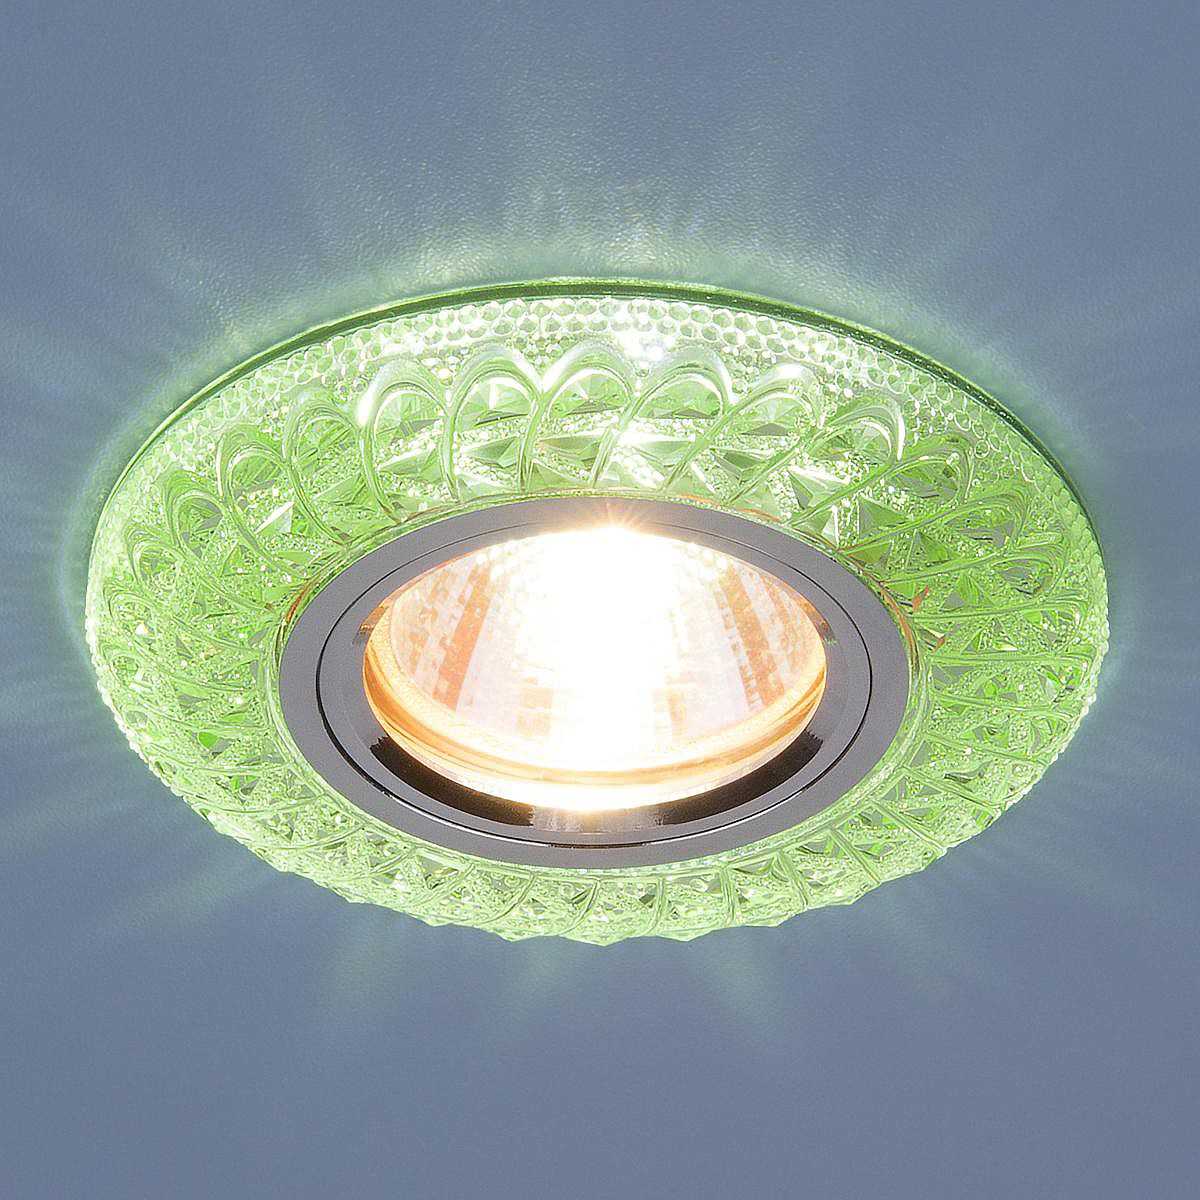 Светильники для натяжных потолков точечные, подвесные, подсветка – какие лучше, как подобрать лампы